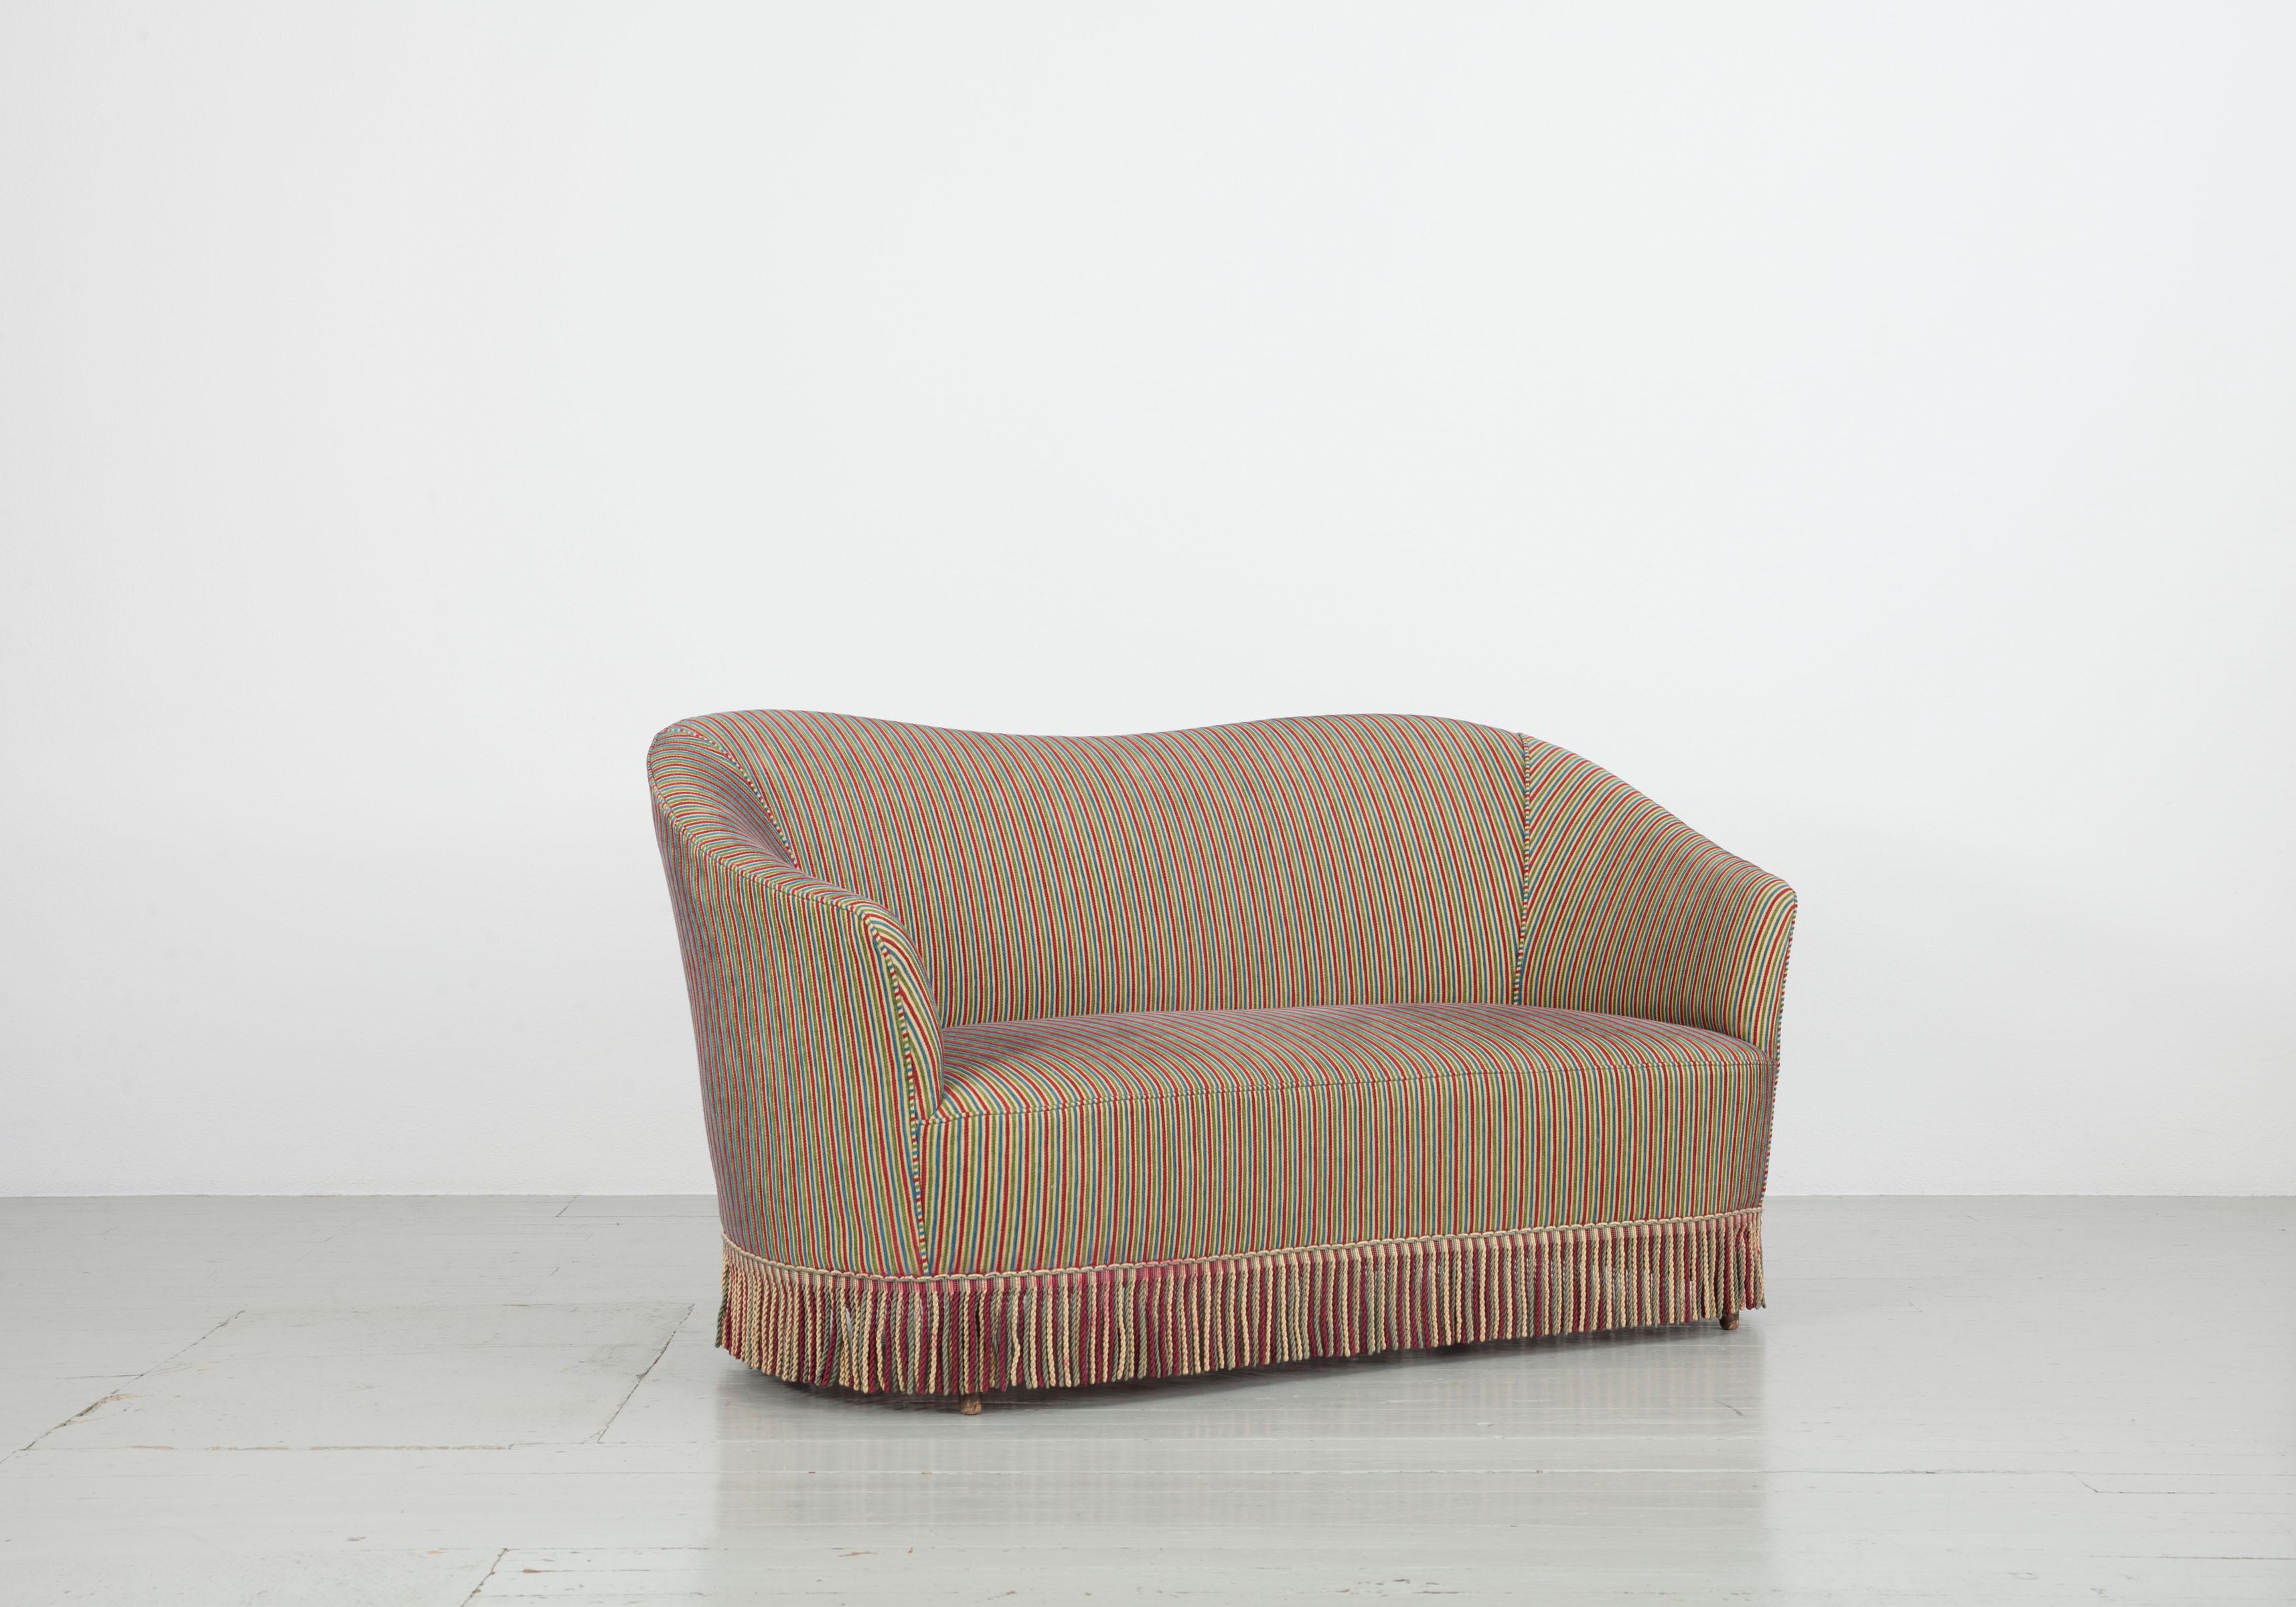 Dieses Set aus zwei Sofas wurde in den 1940er und 1950er Jahren in Italien entworfen. Es ist mit einem Stoff von Fede Cheti bezogen. Die bunten Fransen verdecken die Holzbeine und machen das Möbelstück individuell und außergewöhnlich. Beide Sofas